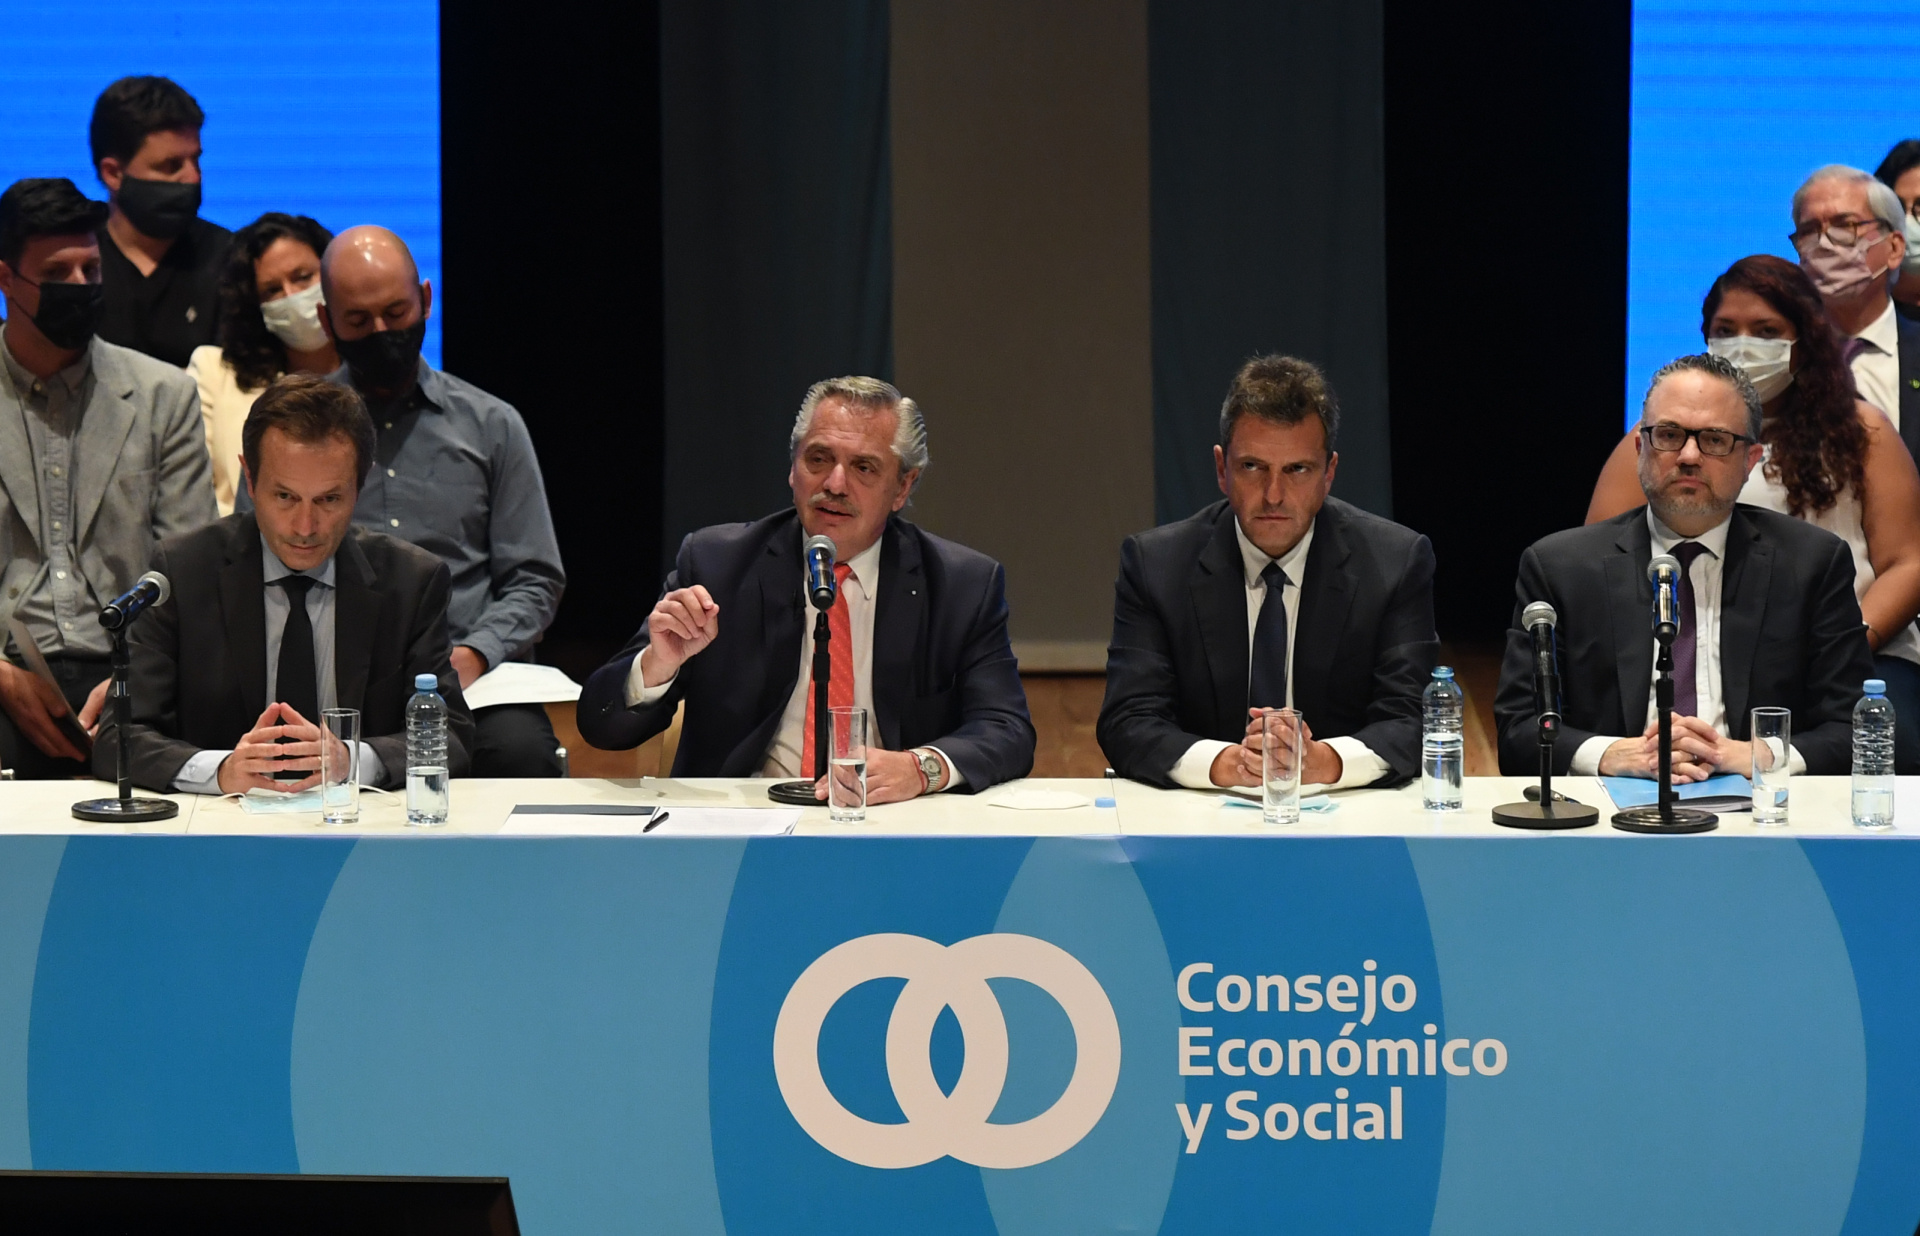 La reunin del Consejo Econmico y Social, con Beliz, Alberto Fernndez y Kulfas en el escenario. (Foto Maximiliano Luna)